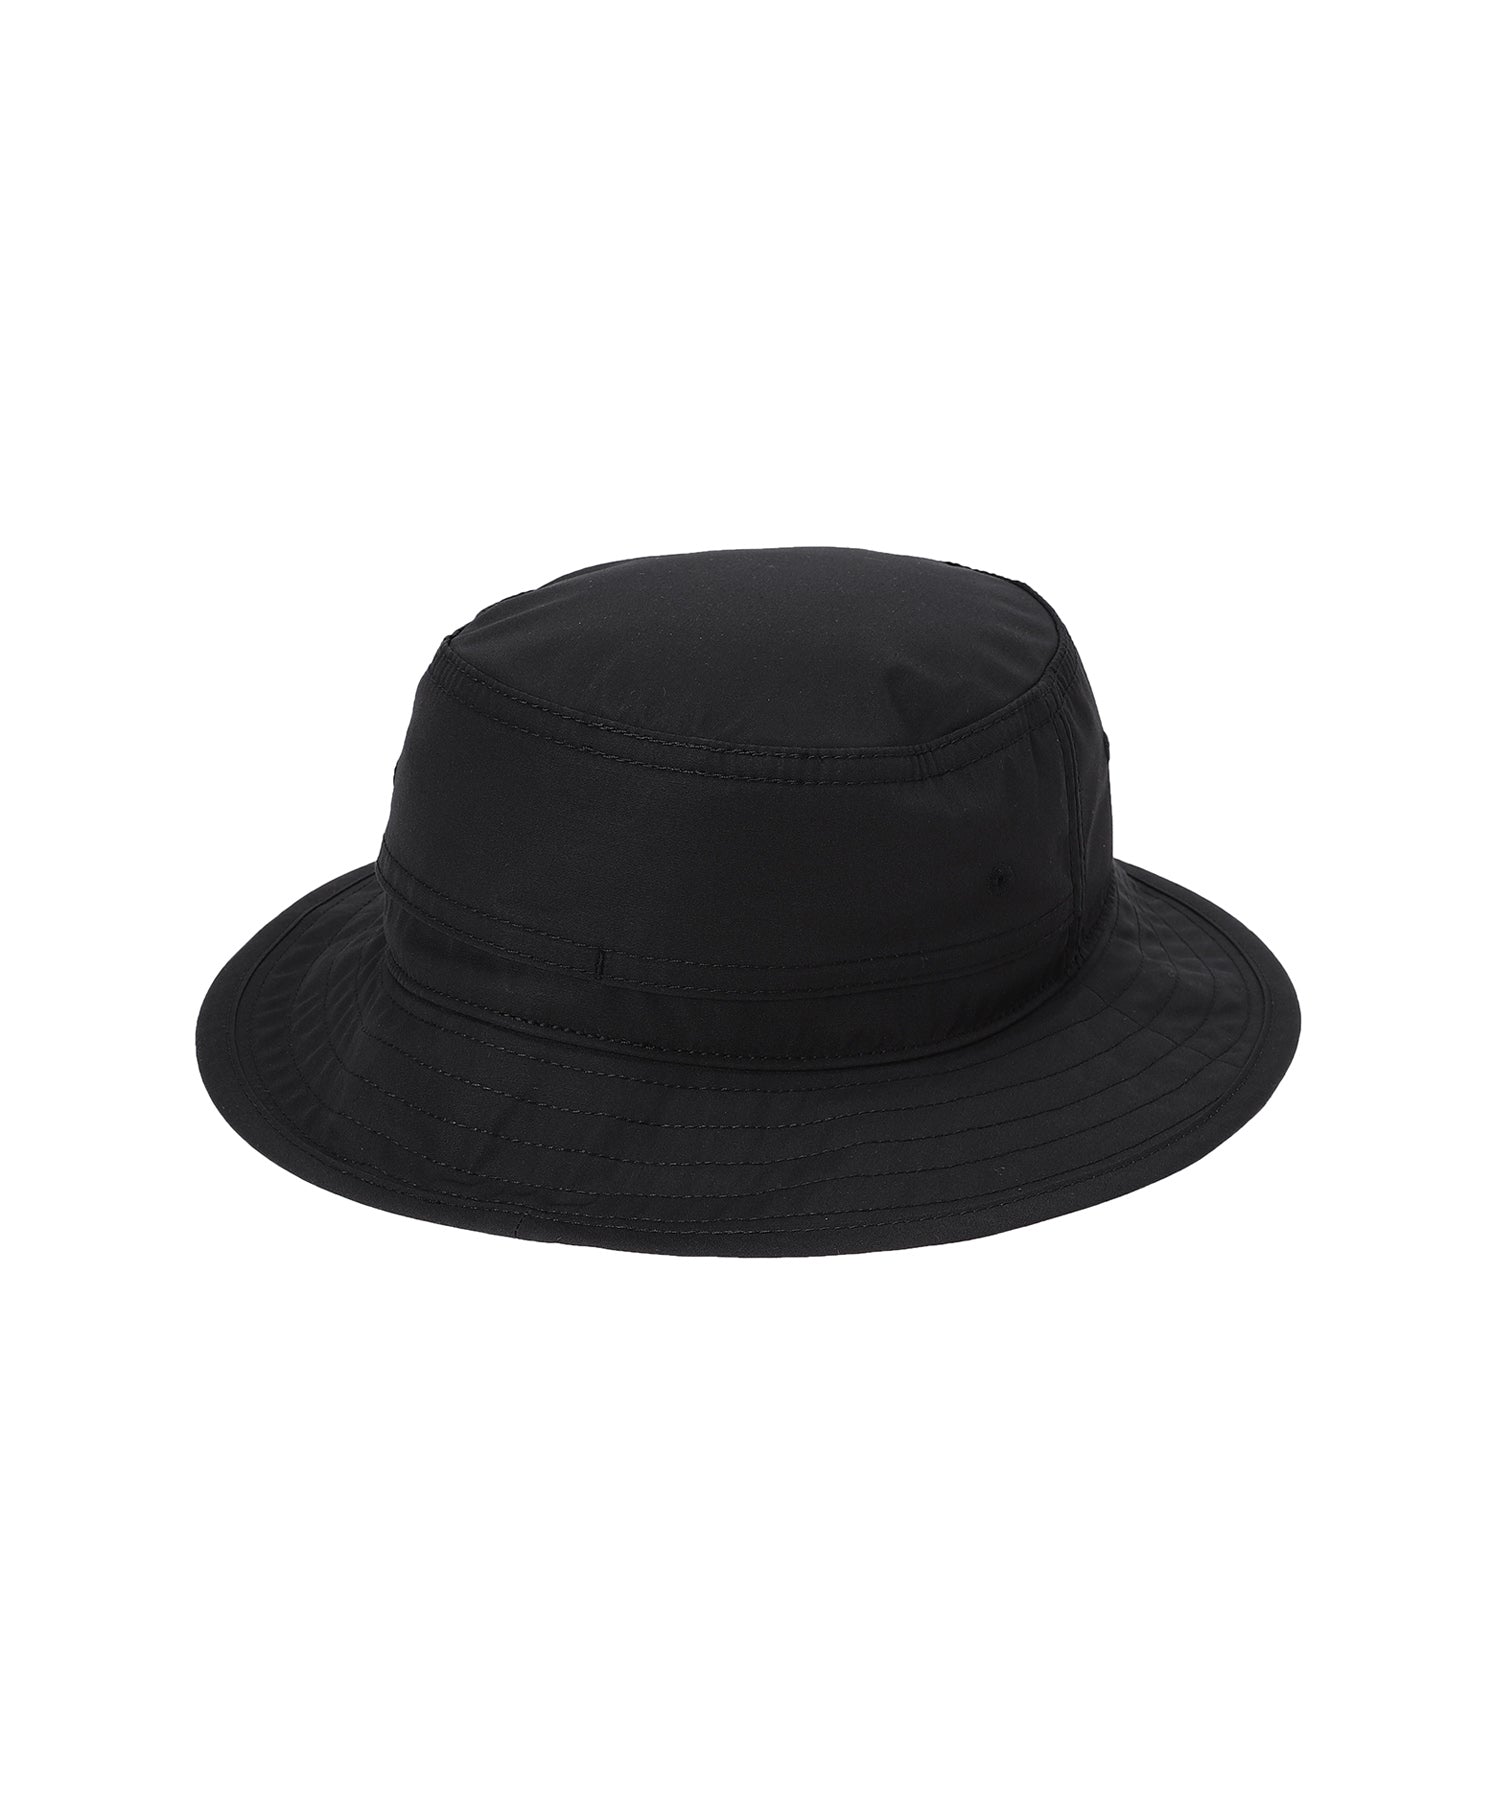 65/35 Field Hat